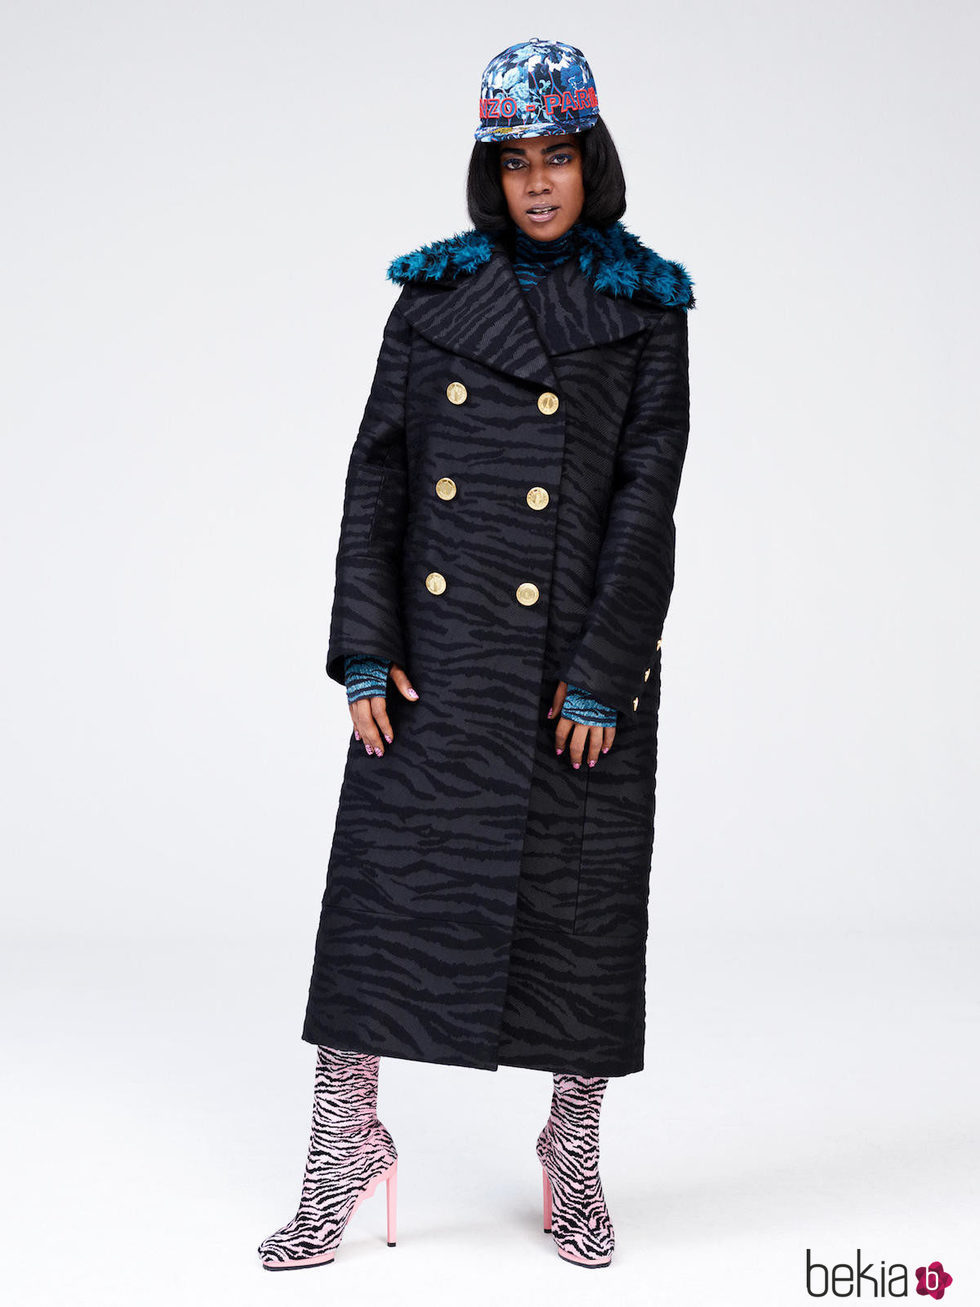 Abrigo de estilo navy de la colección 'Kenzo x H&M'